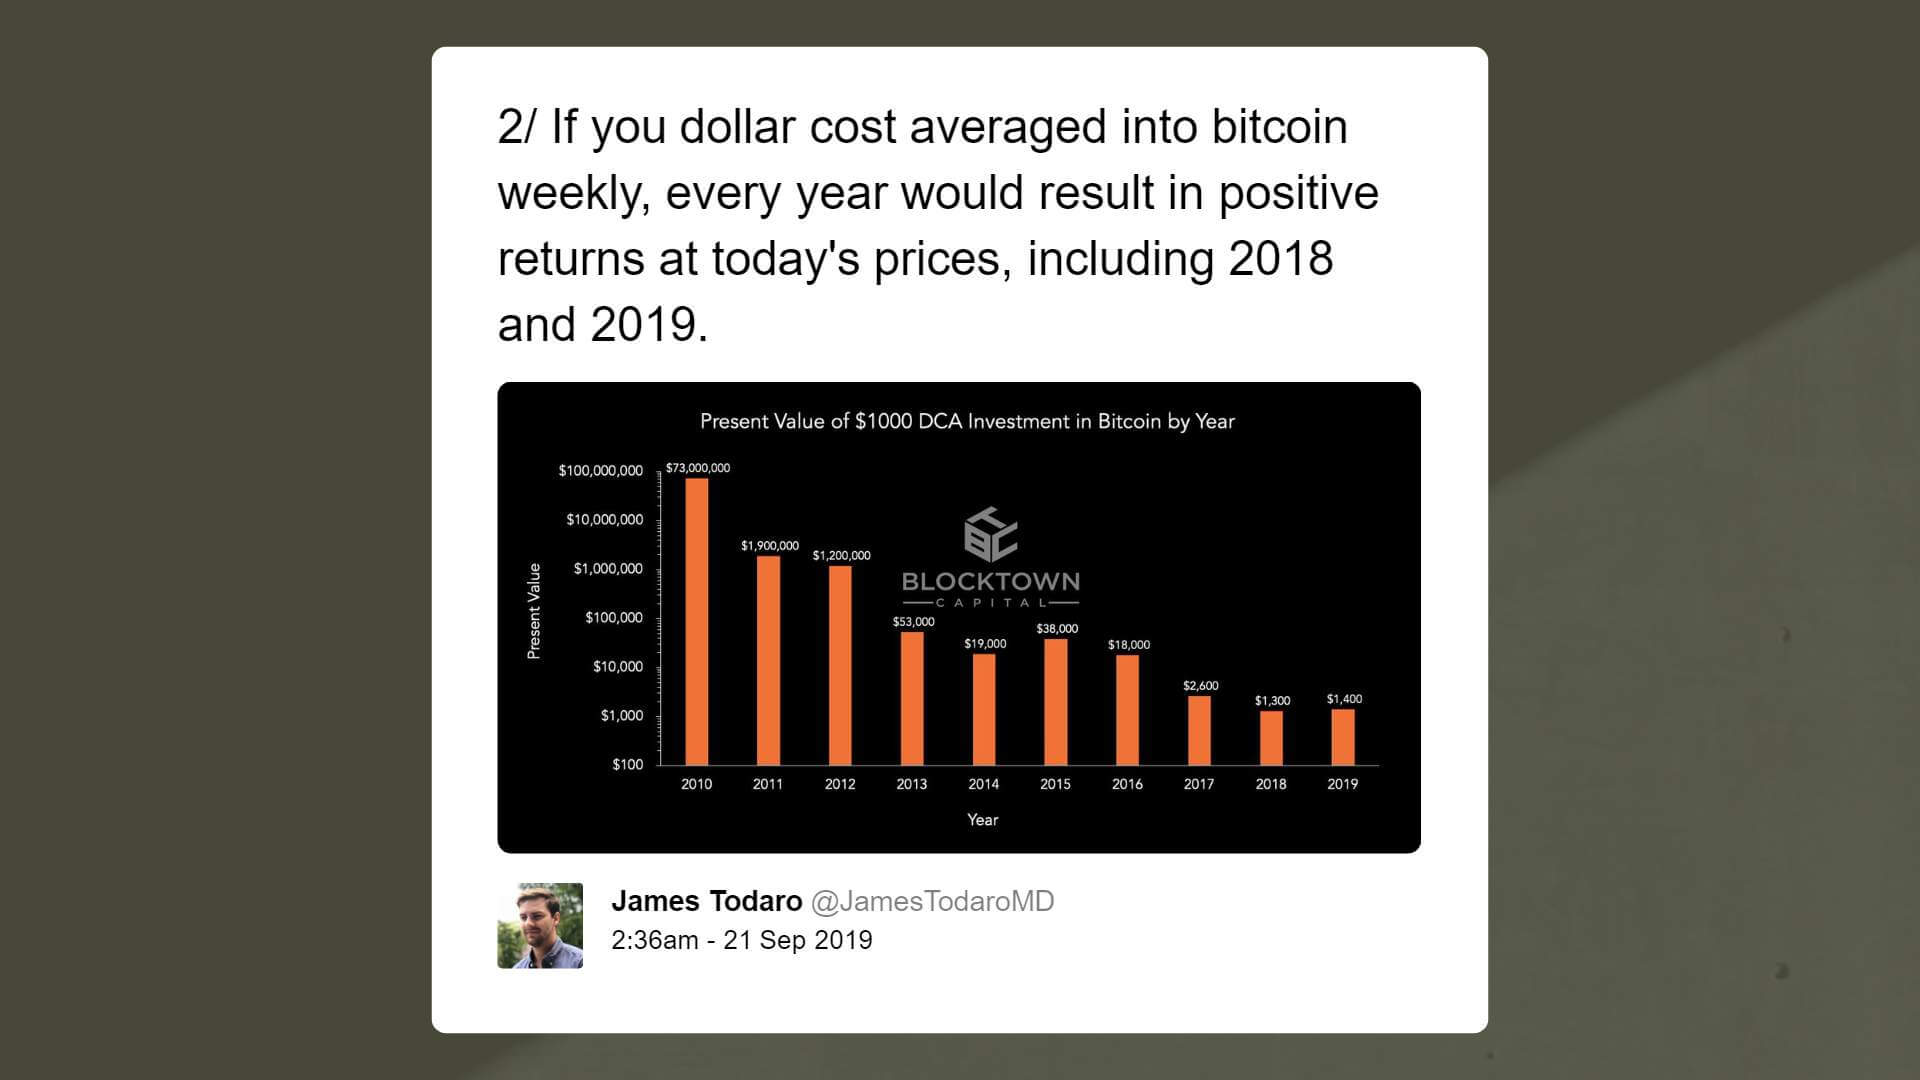 James Todaro at Blocktown Capital says bitcoin has a large room to grow over the long term